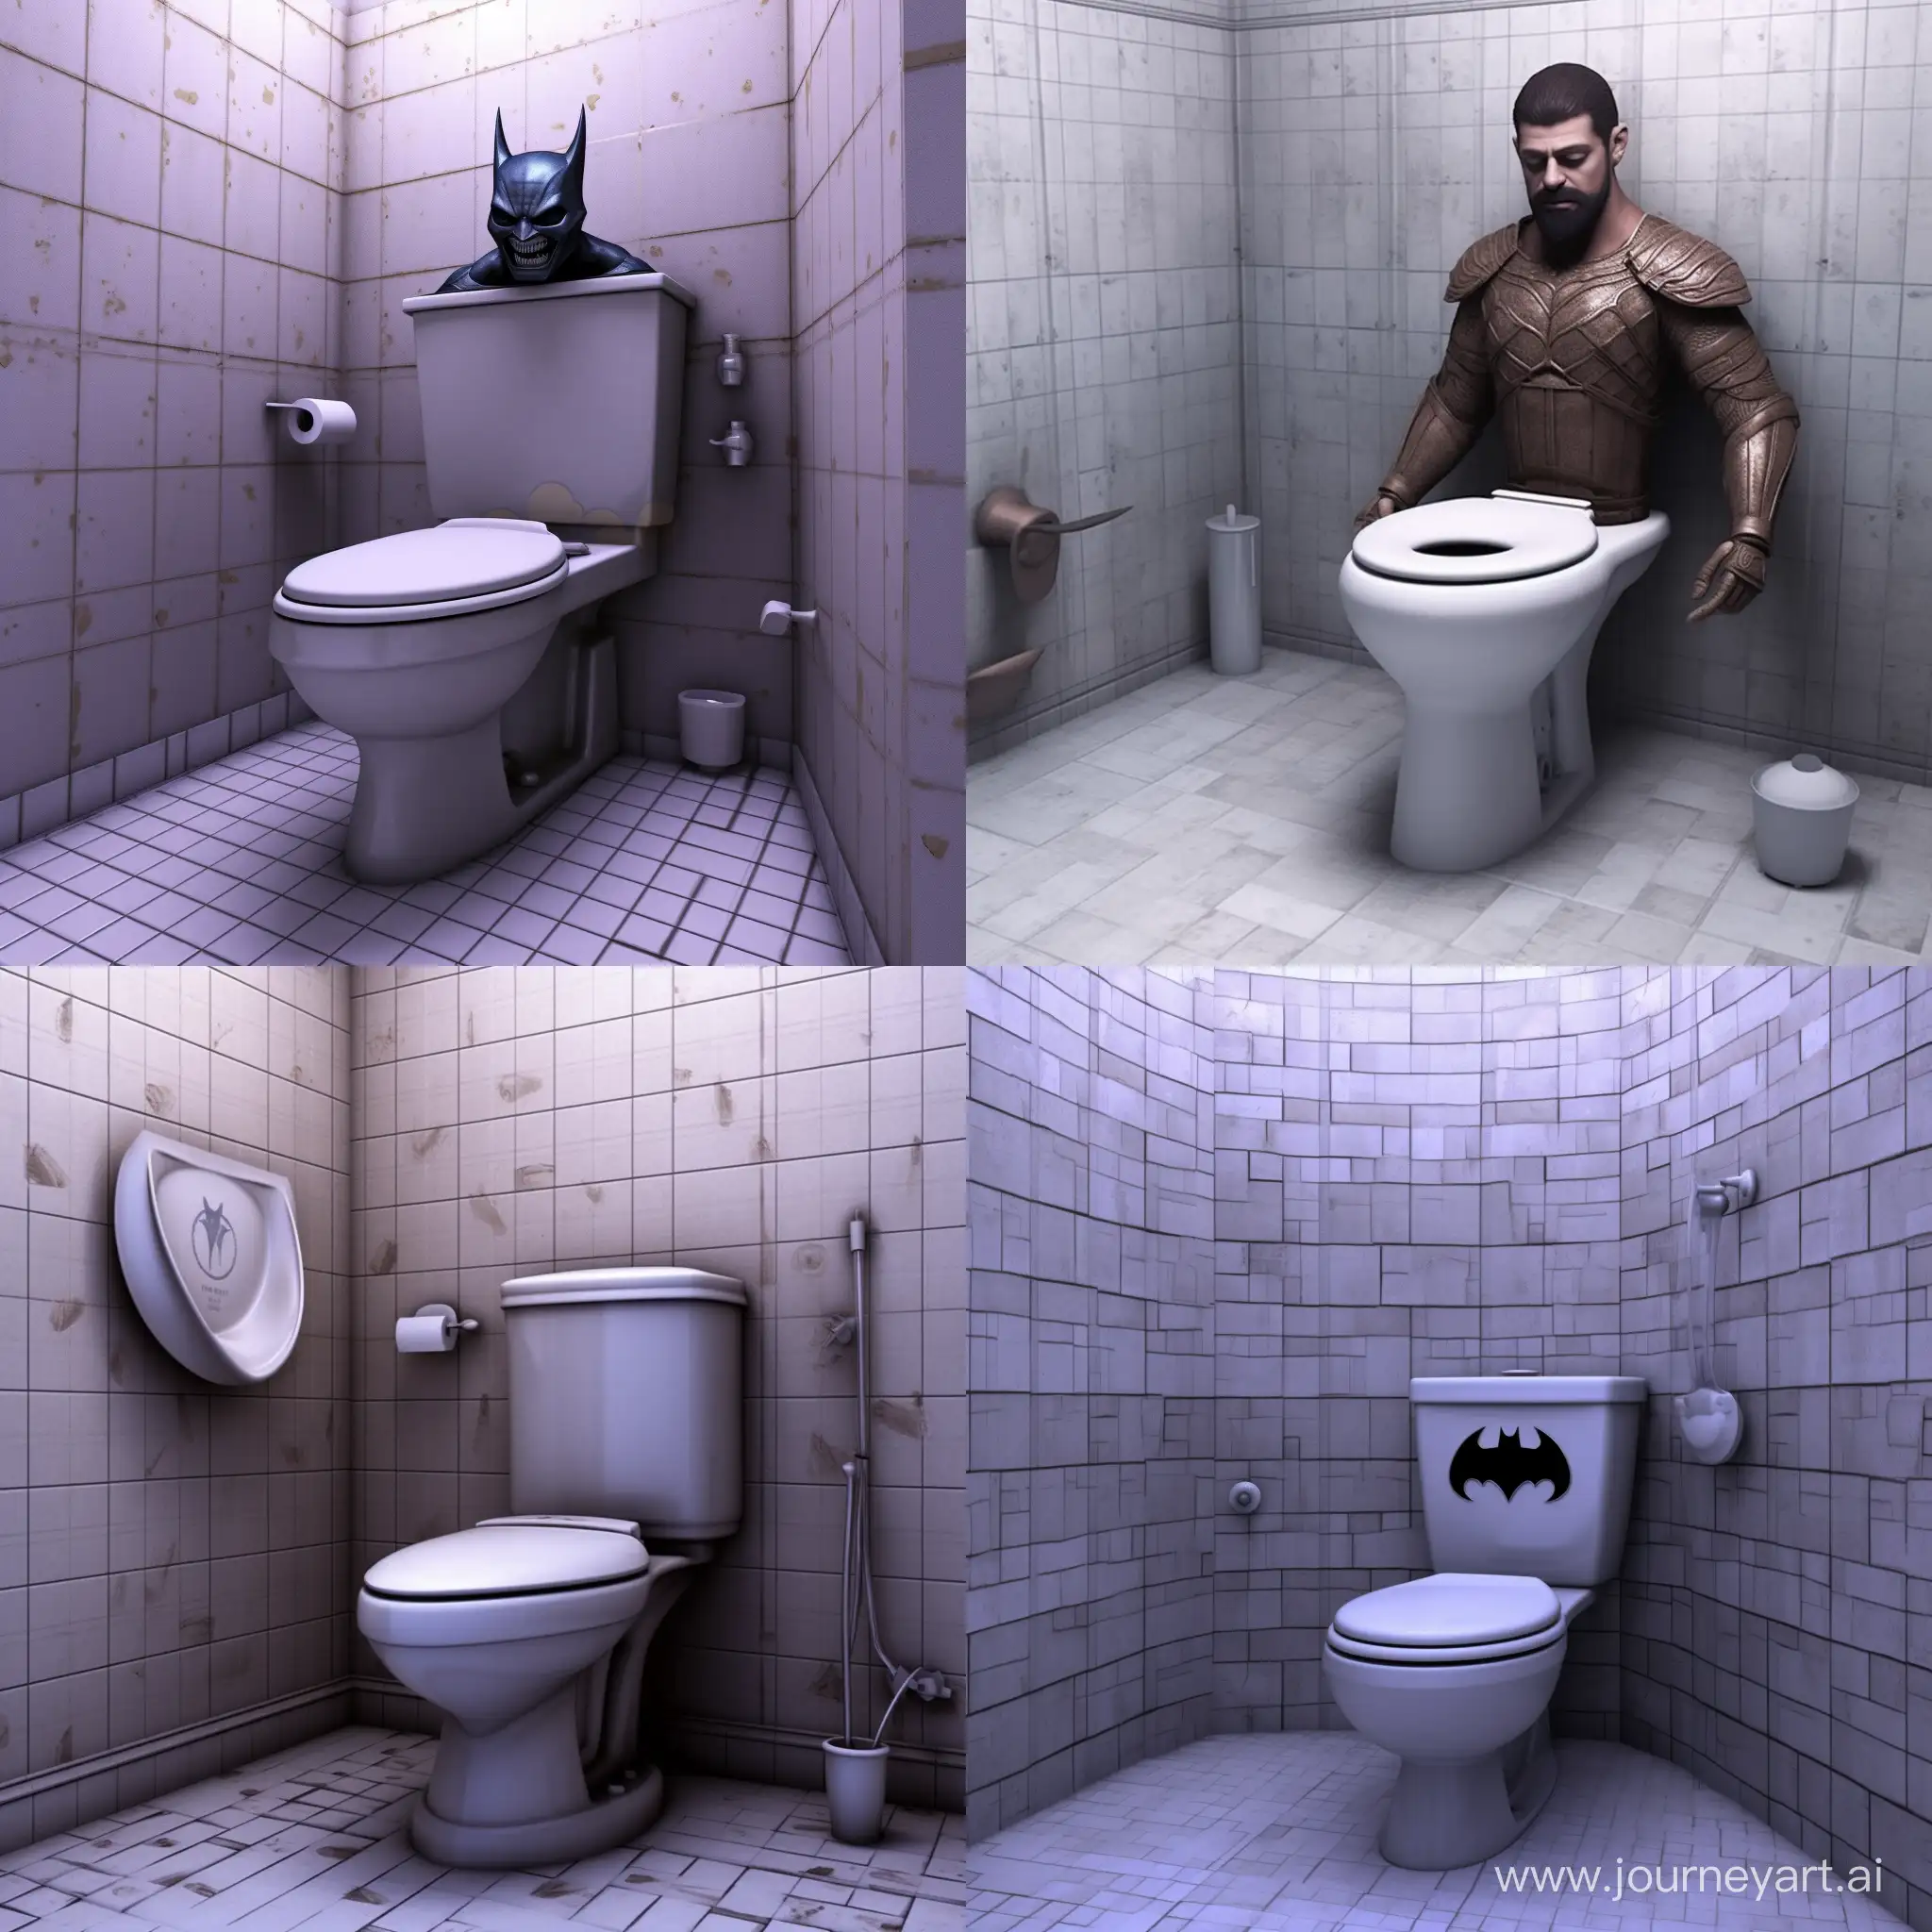 batman in middle eastern toilet